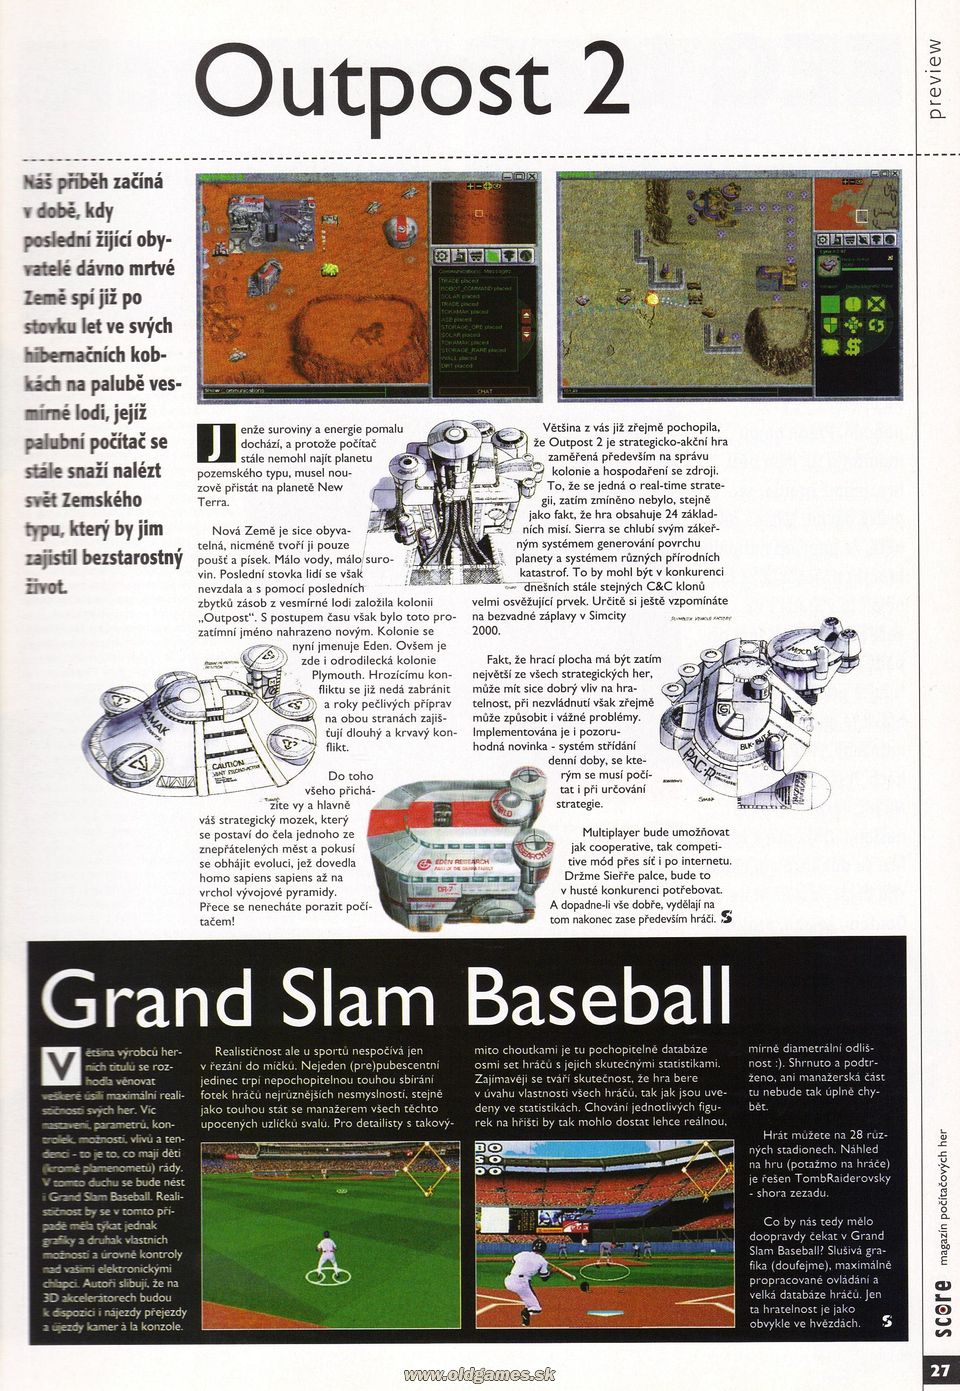 Preview: Outpost 2, Grand Slam Baseball